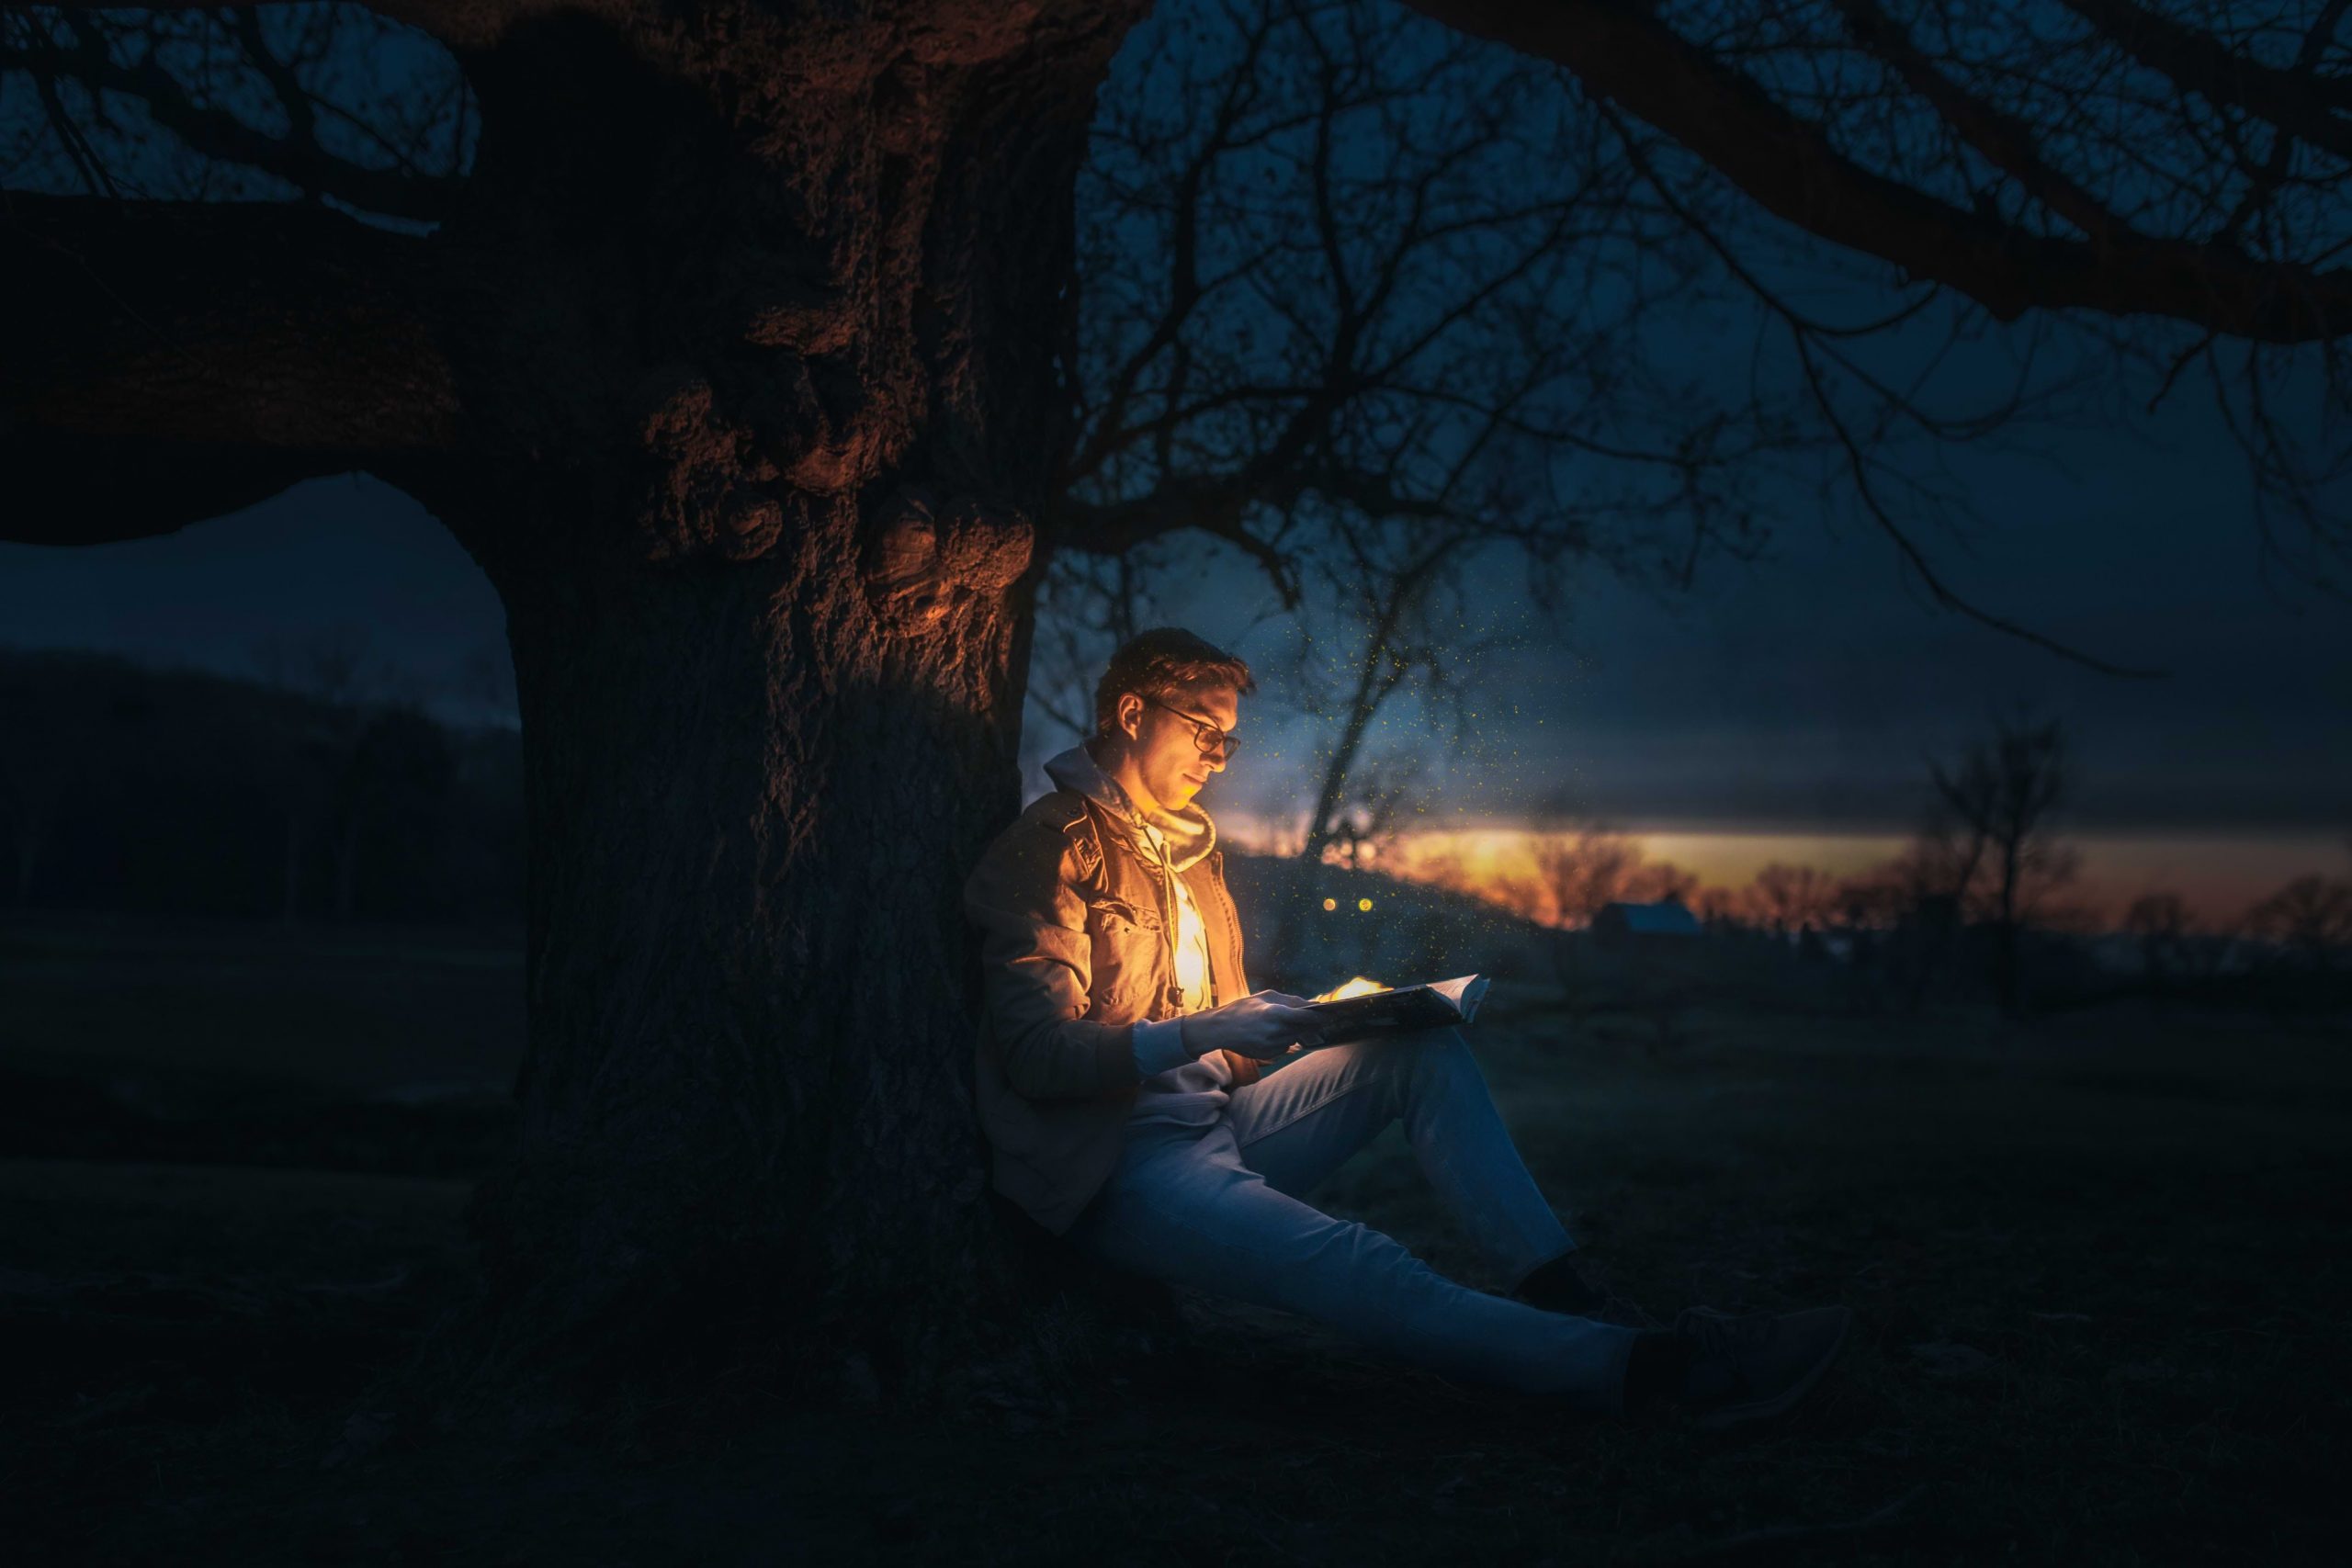 czytanie baśni pod drzewem w porze nocnej